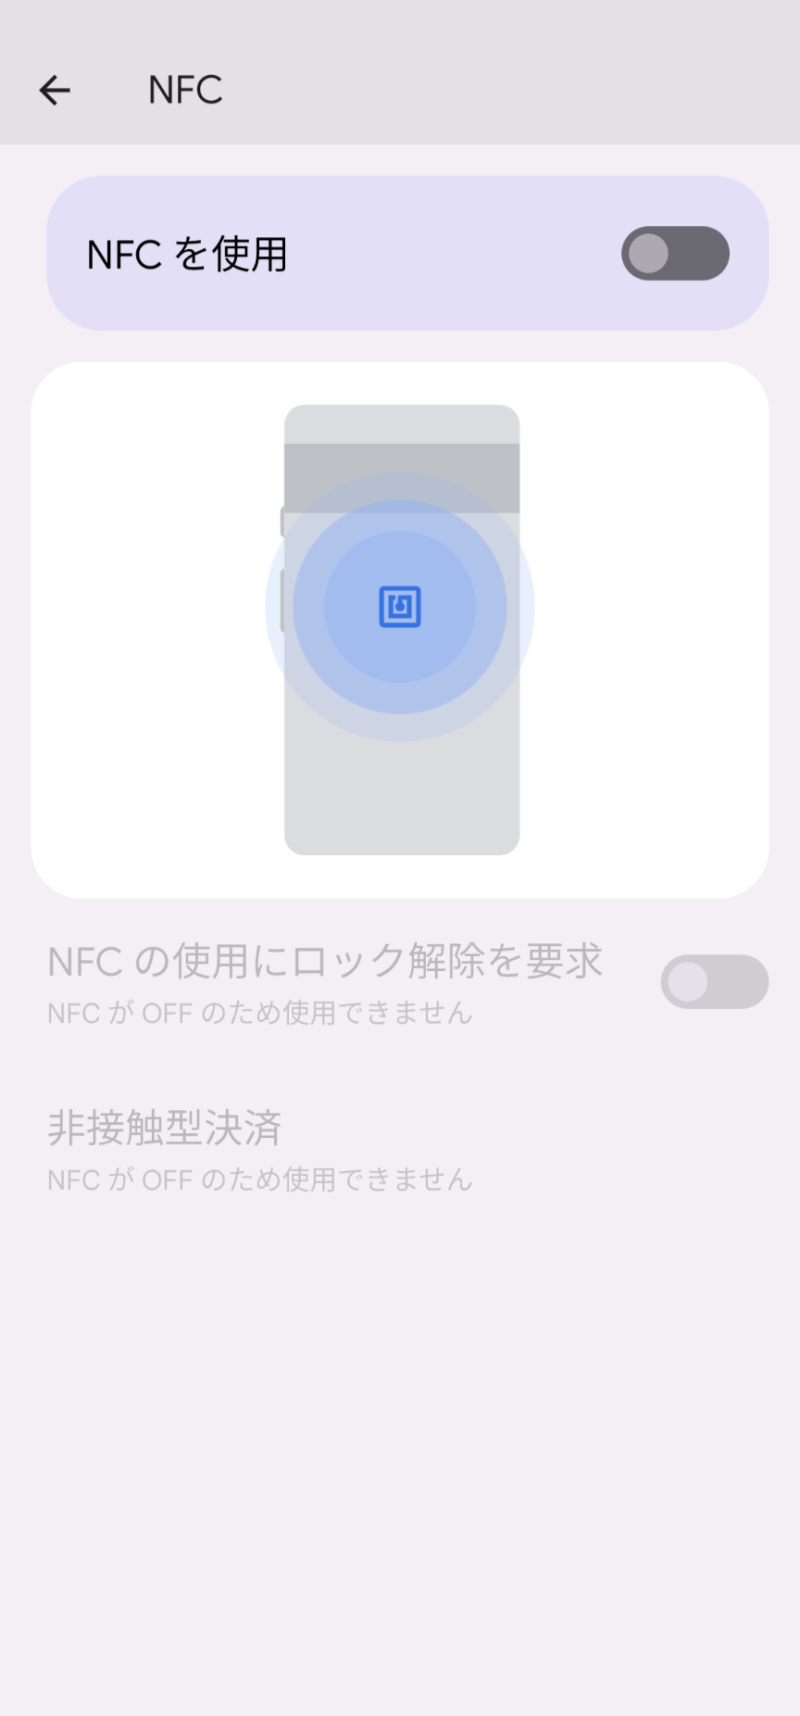 NFCを使用がグレイアウト